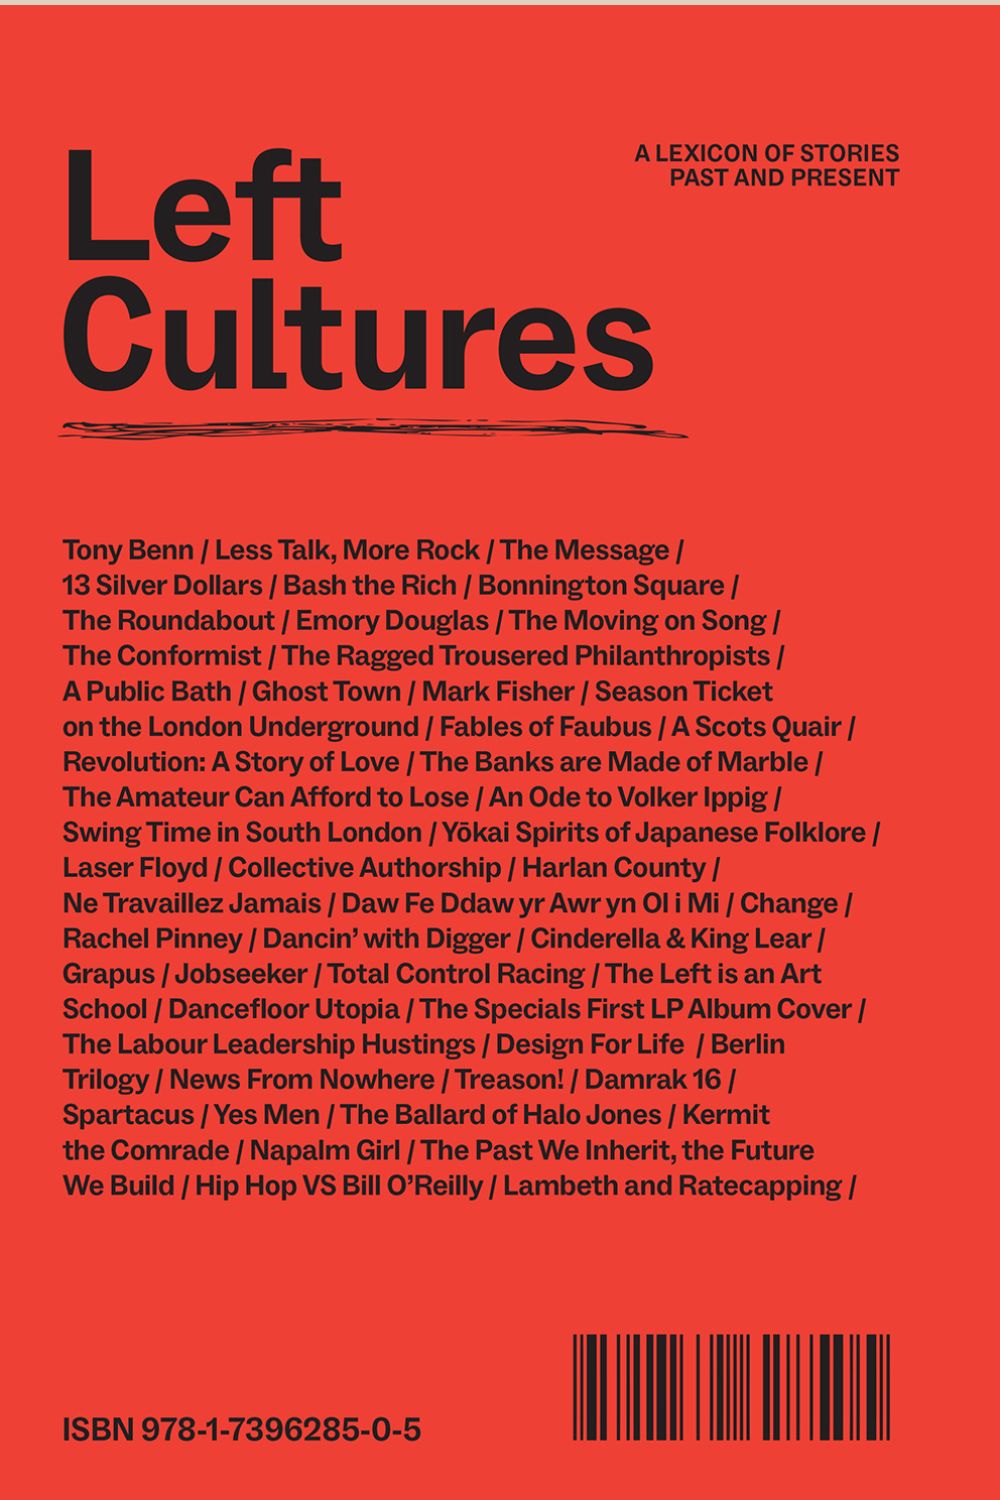 Left Cultures Magazine Issue 1